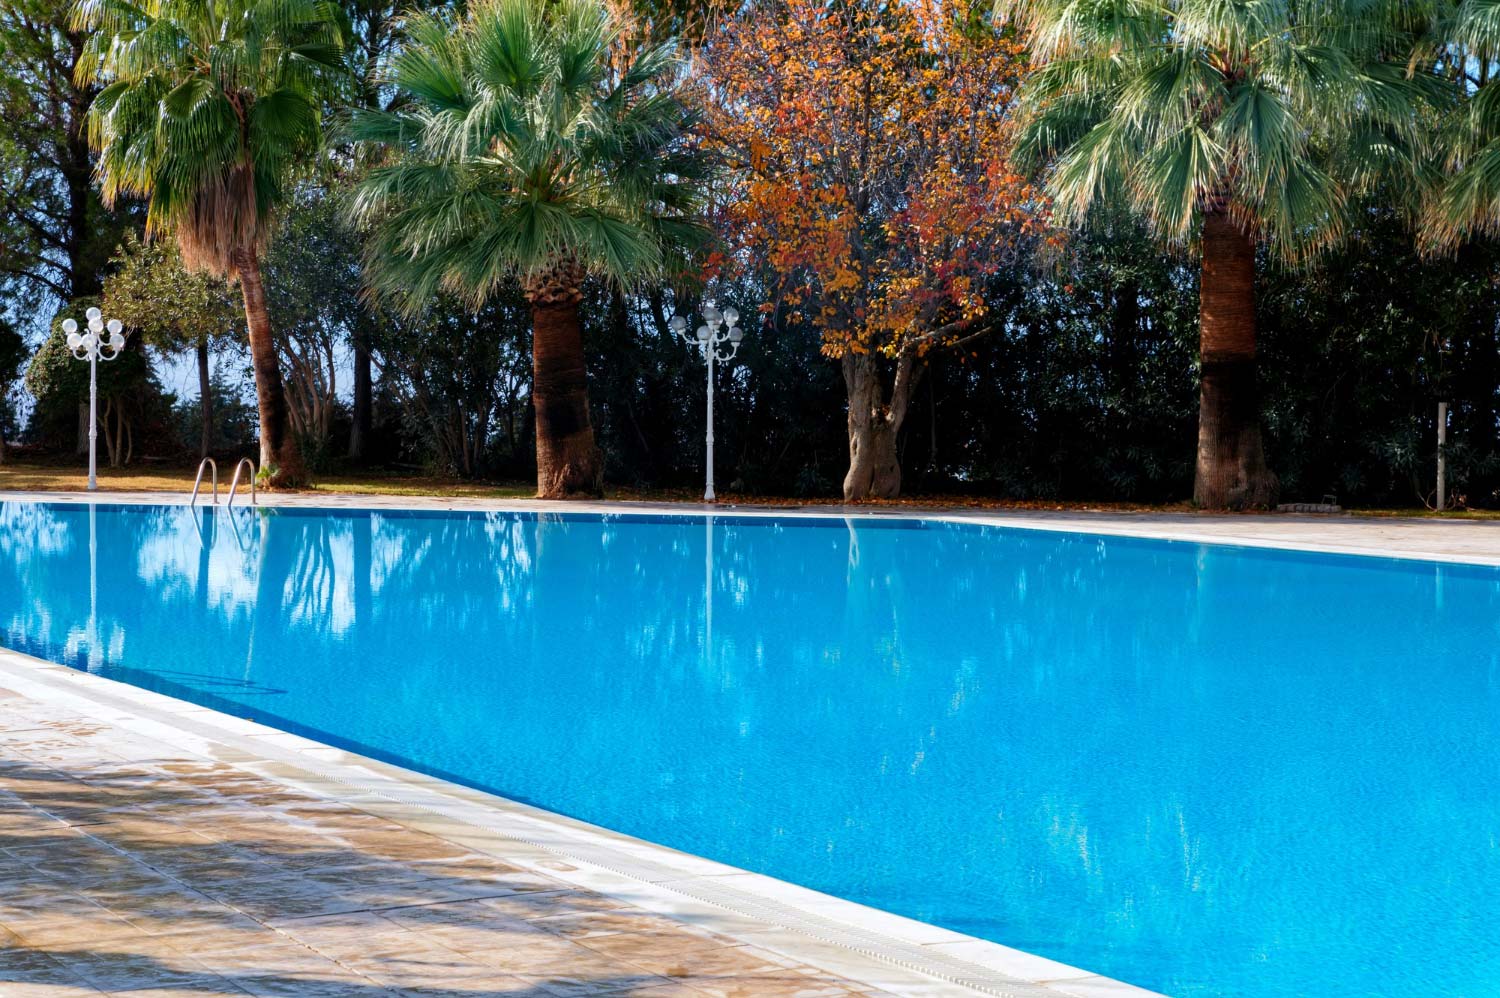 Accesorios para piscina: los imprescindibles para disfrutar al máximo del agua